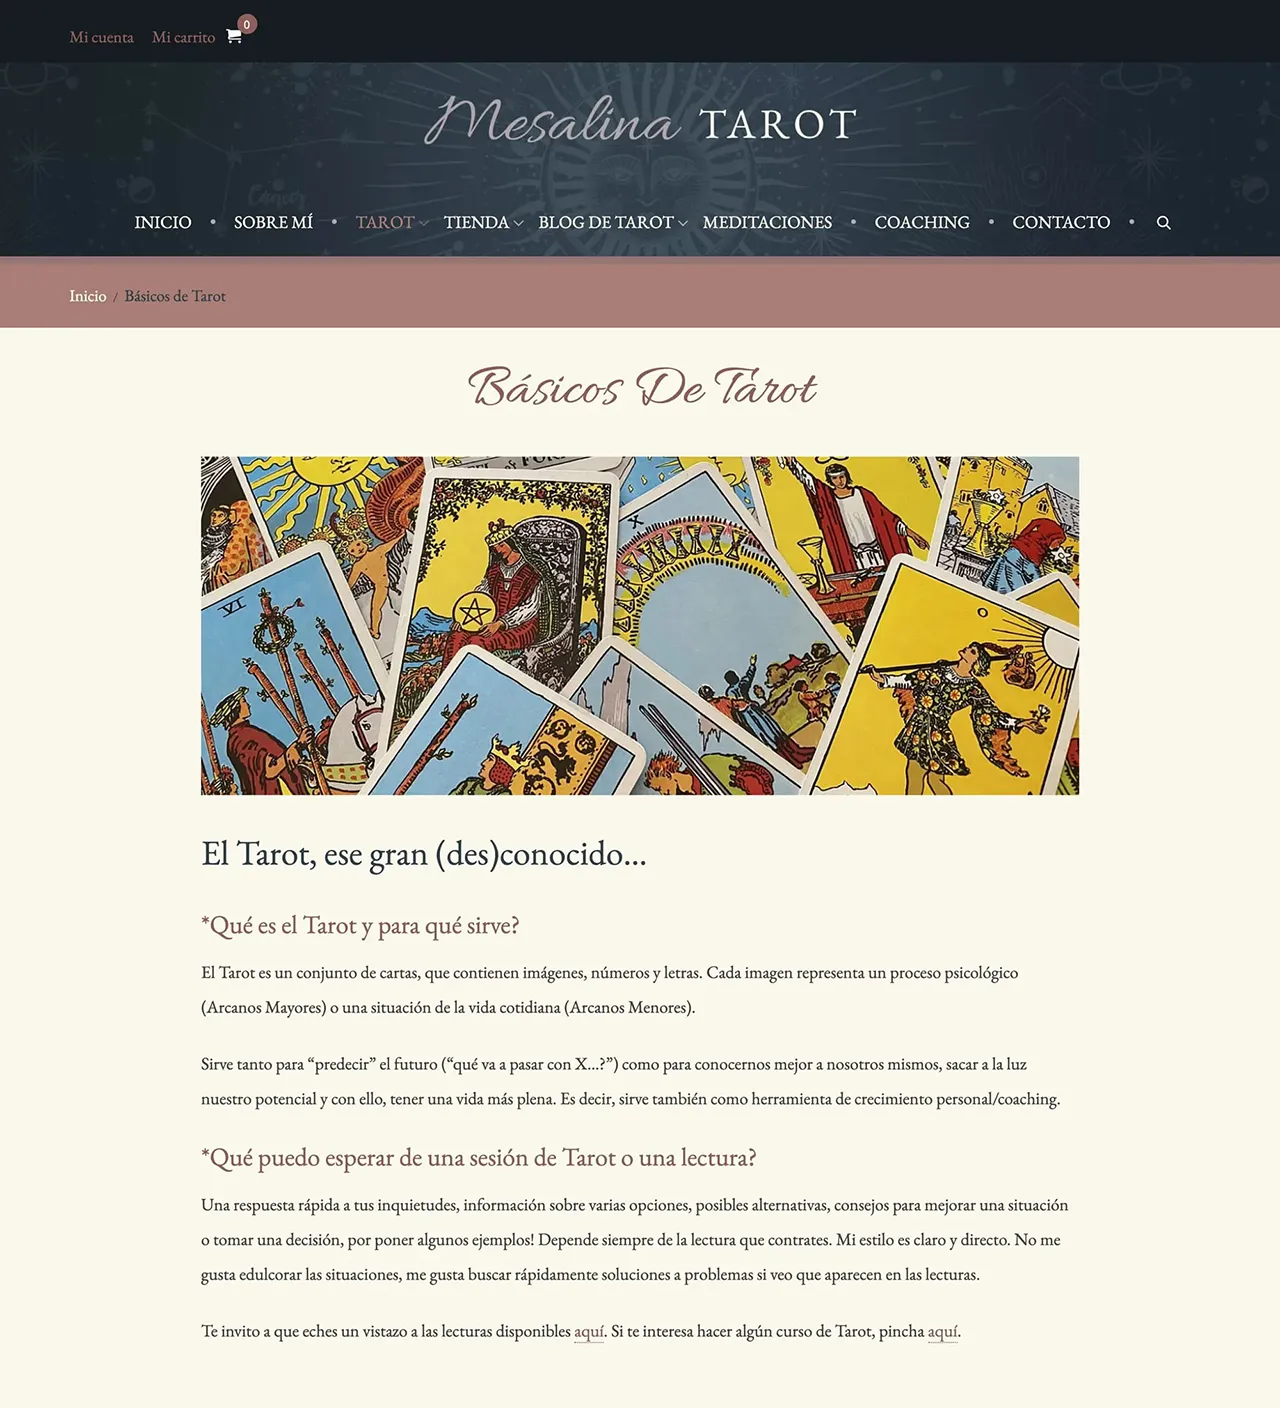 Mesalina Tarot website page